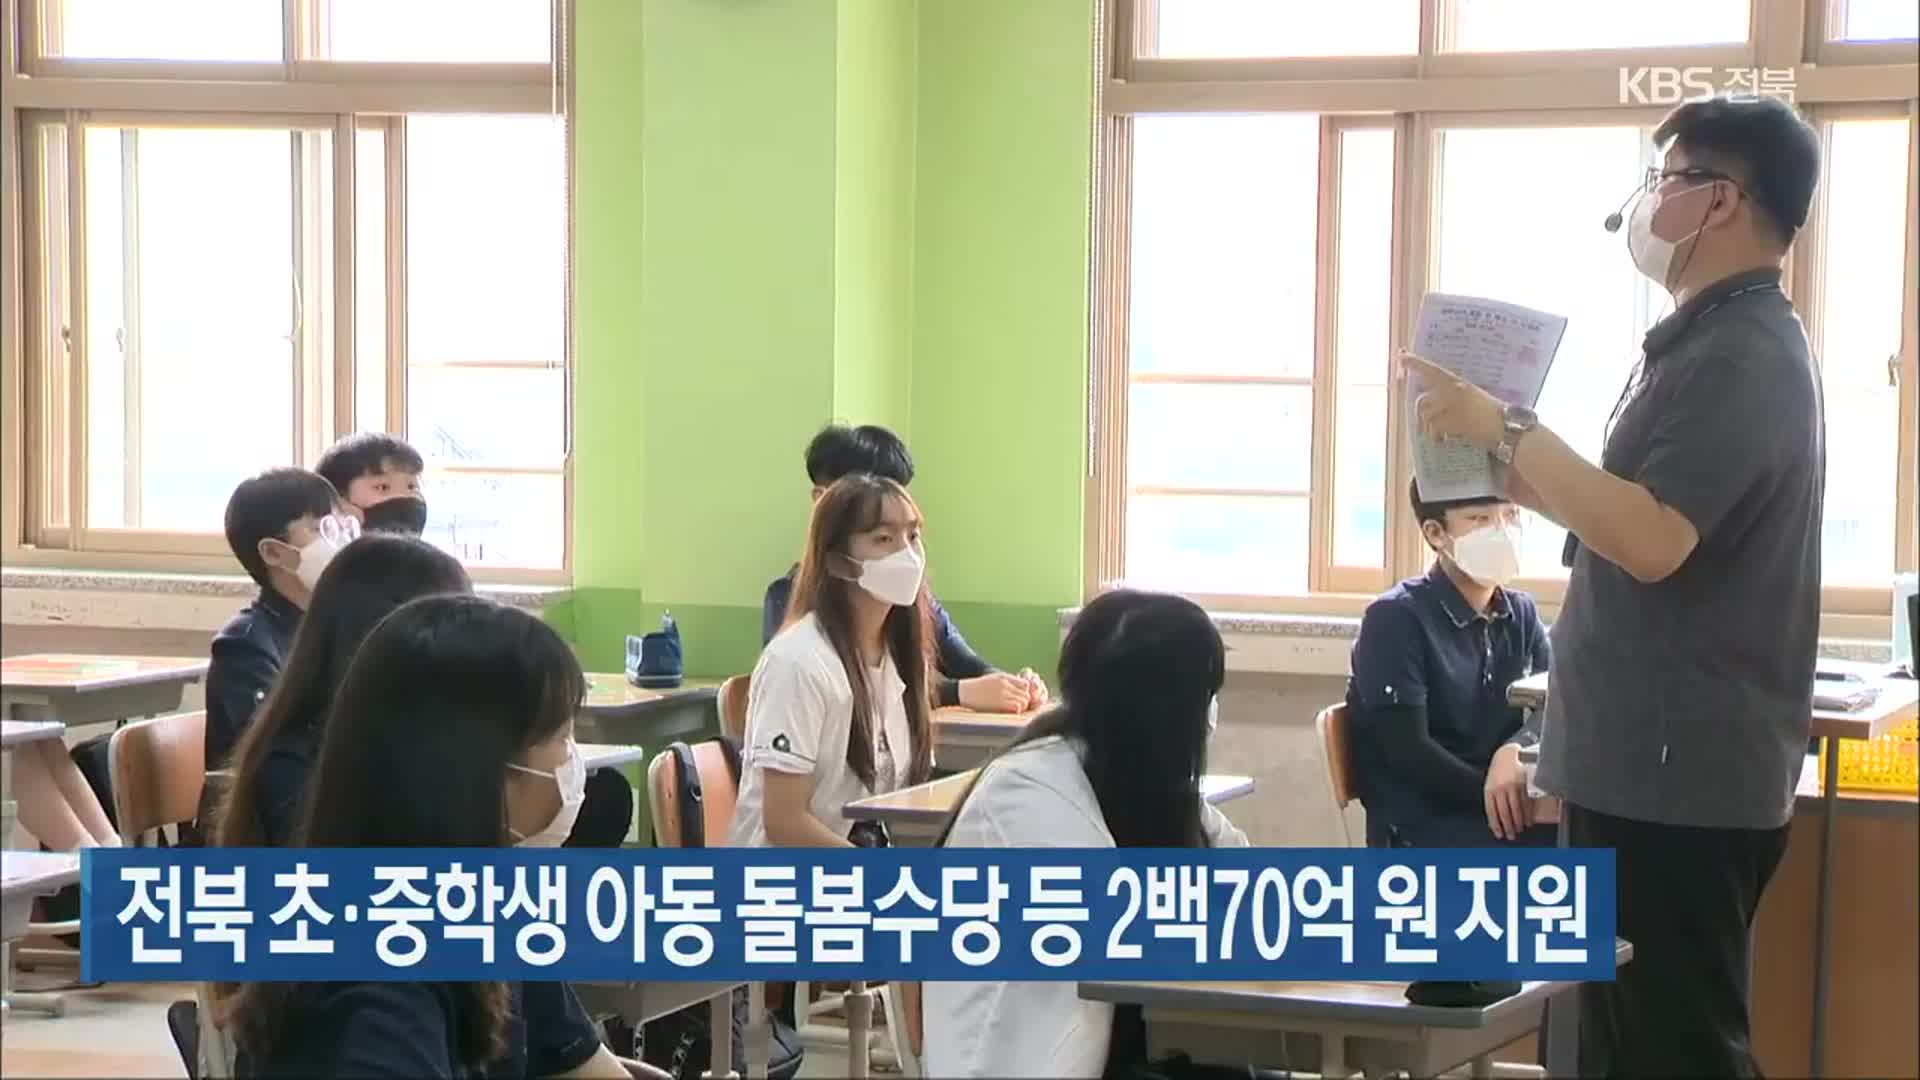 전북 초·중학생 아동 돌봄수당 등 2백70억 원 지원